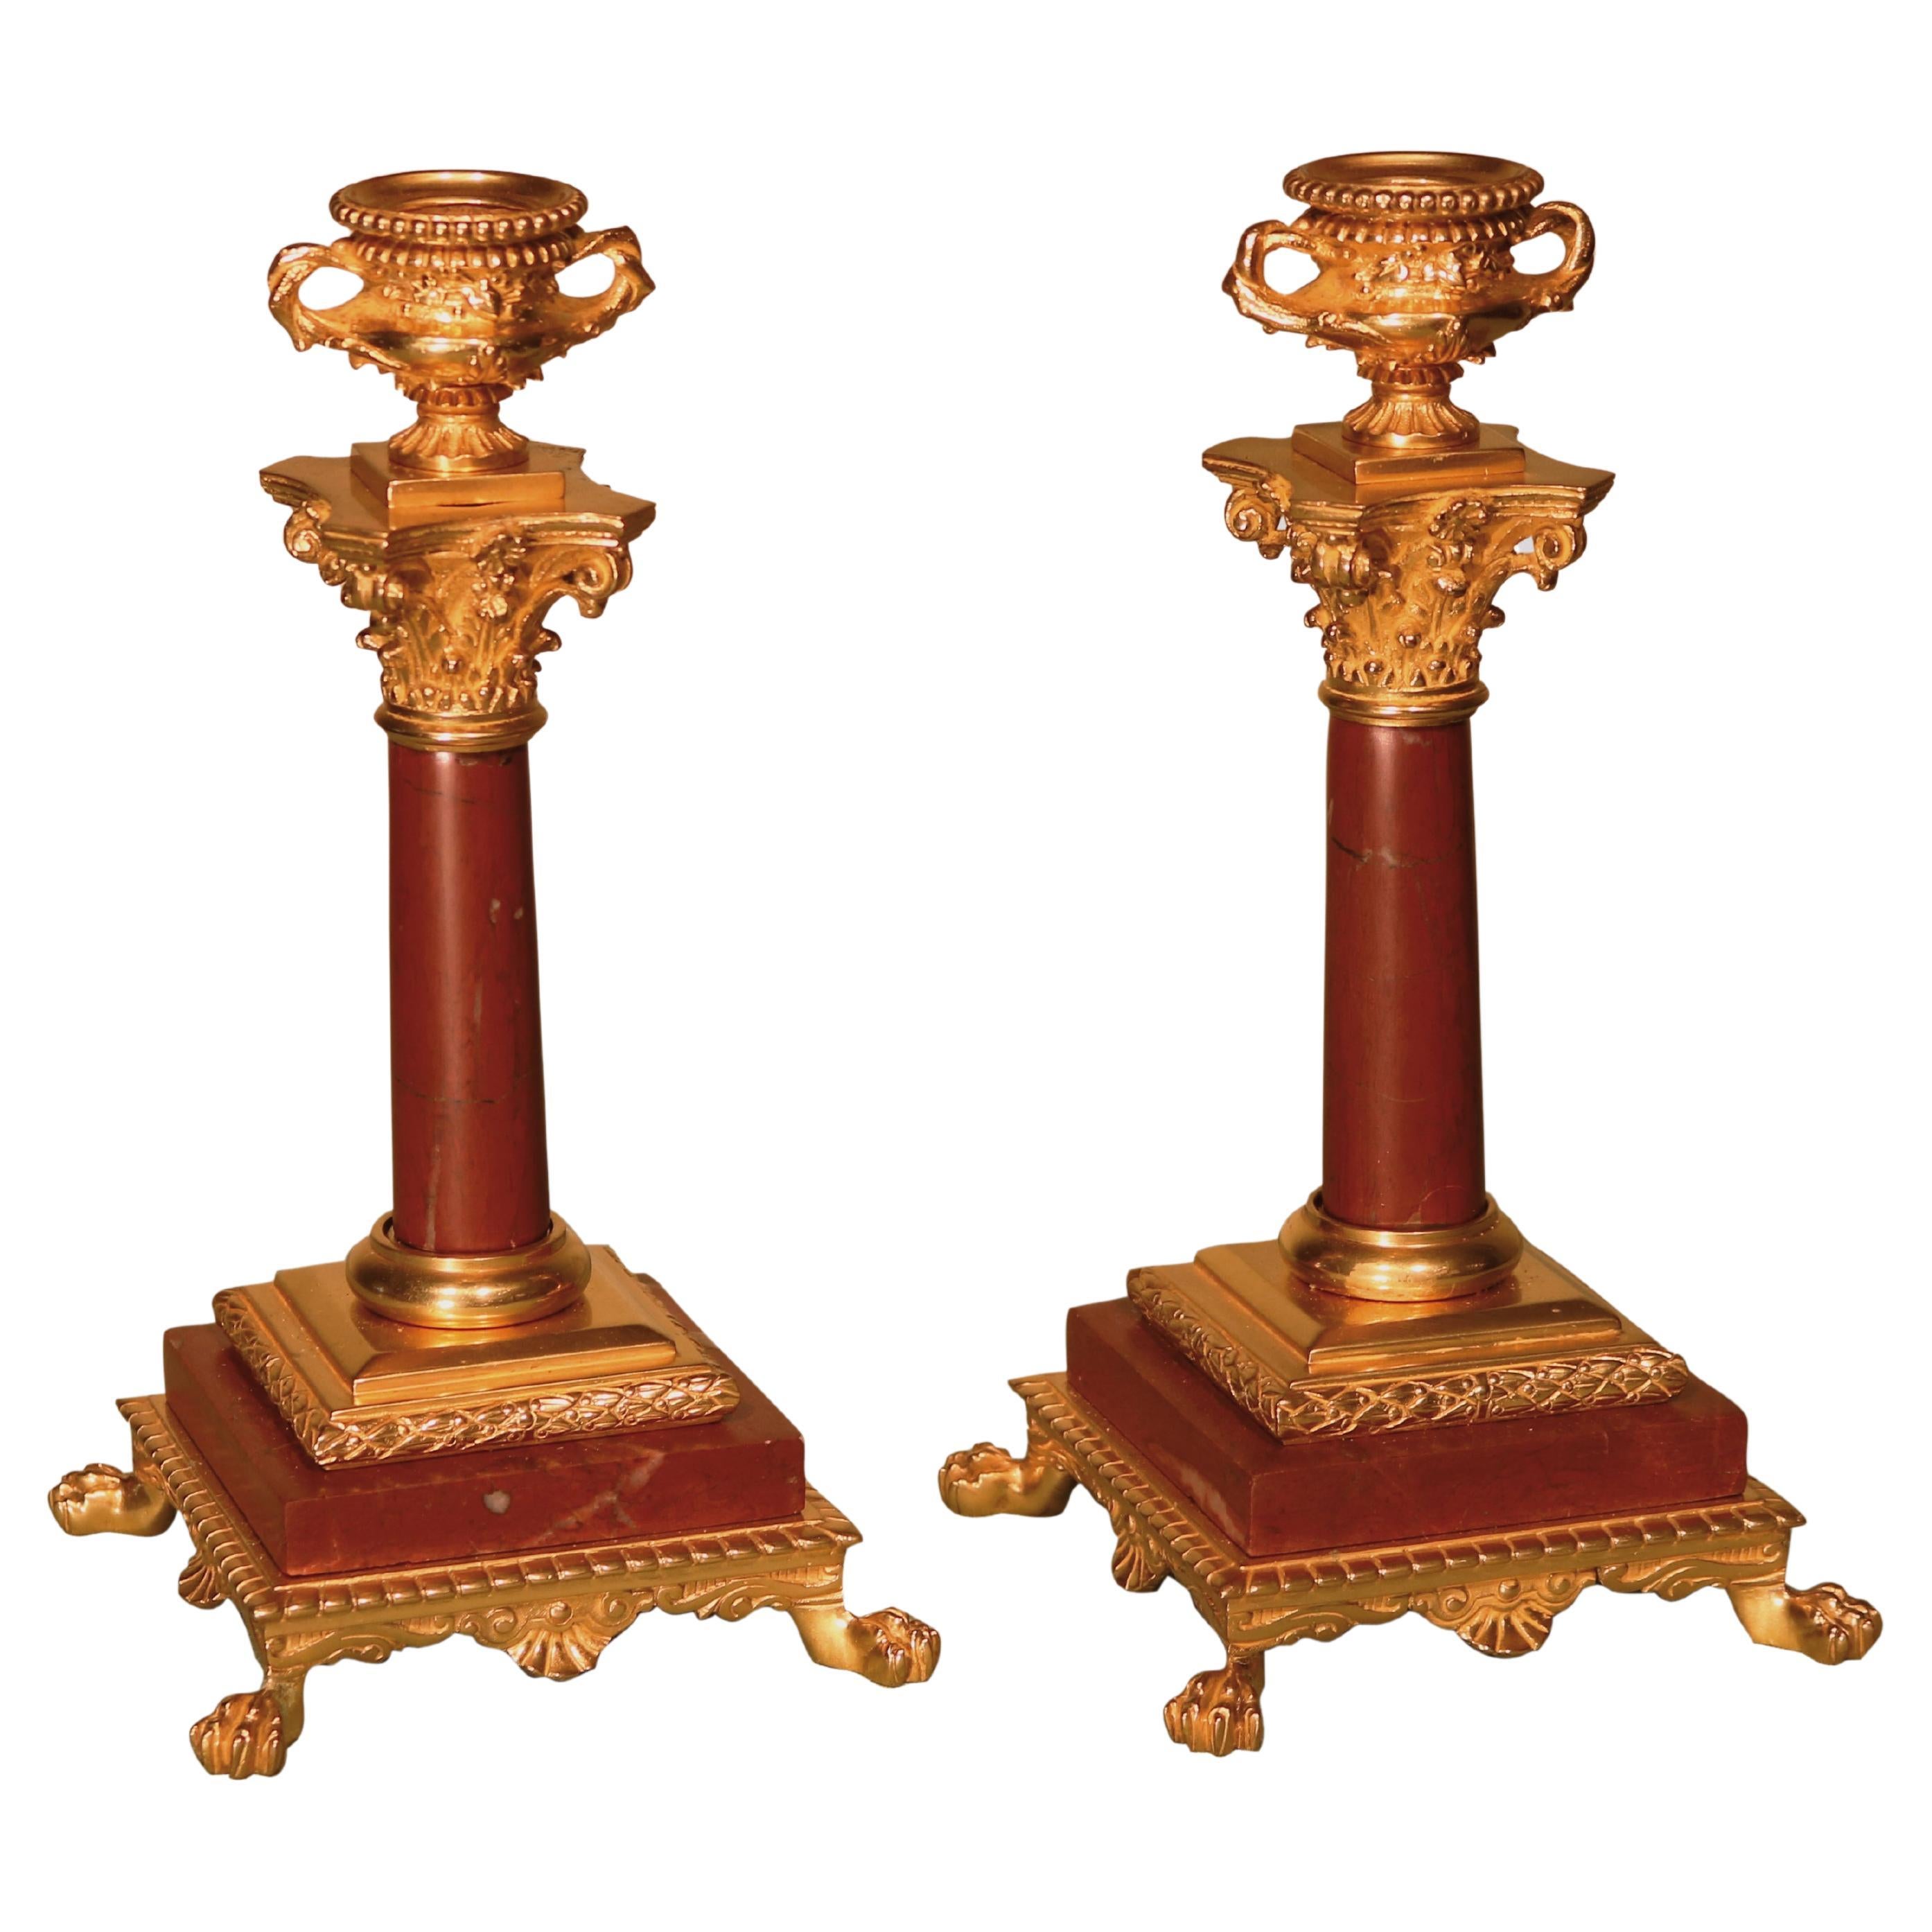 Paire de chandeliers en bronze doré et marbre de la fin du XIXe siècle